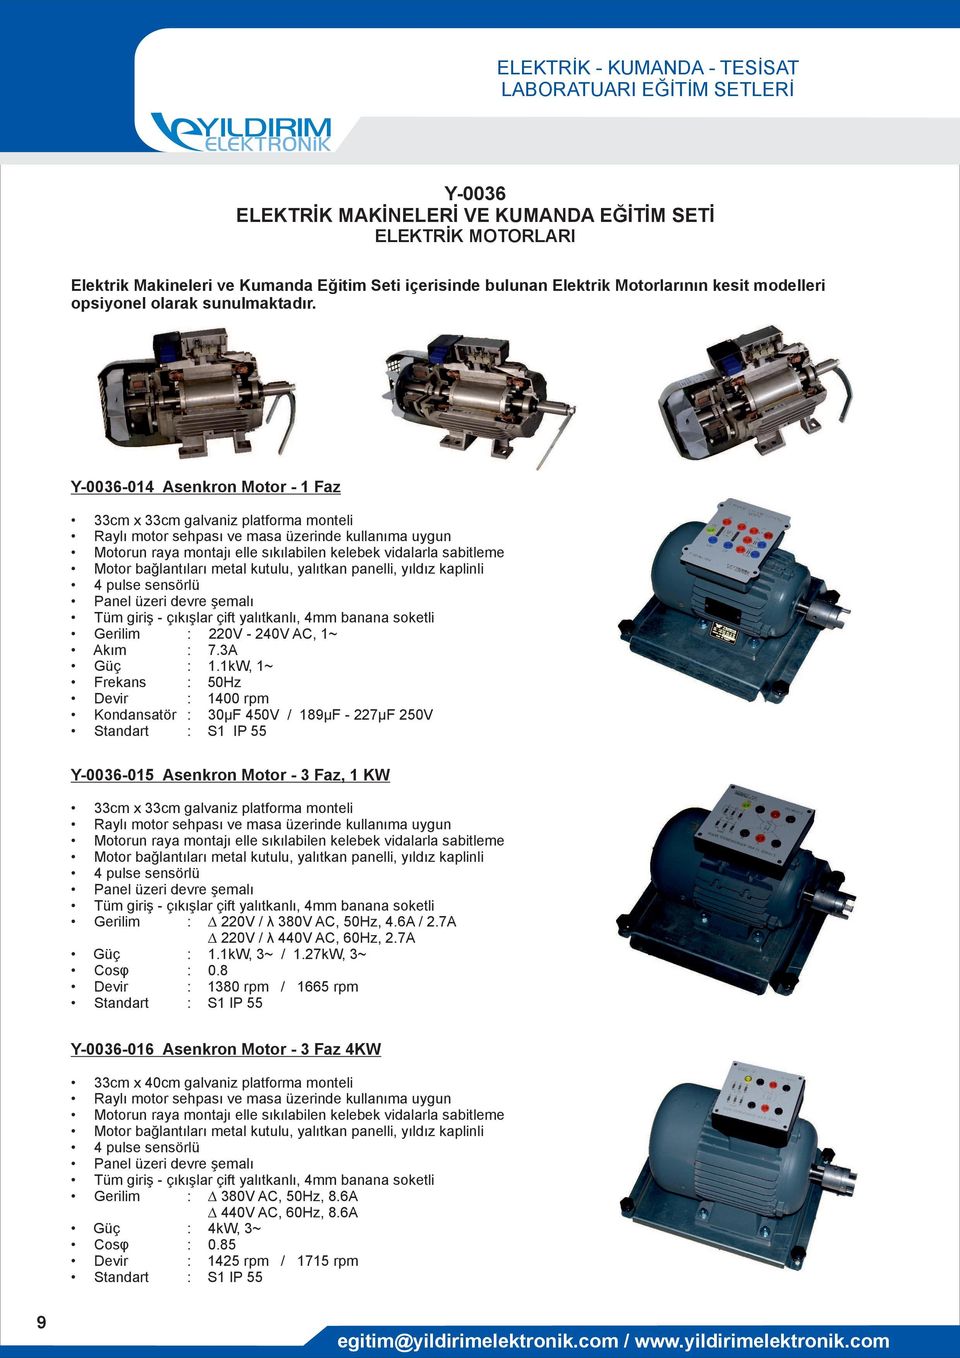 4 pulse sensörlü Gerilim : 220V - 240V AC, 1~ Akım : 7.3A Güç : 1.